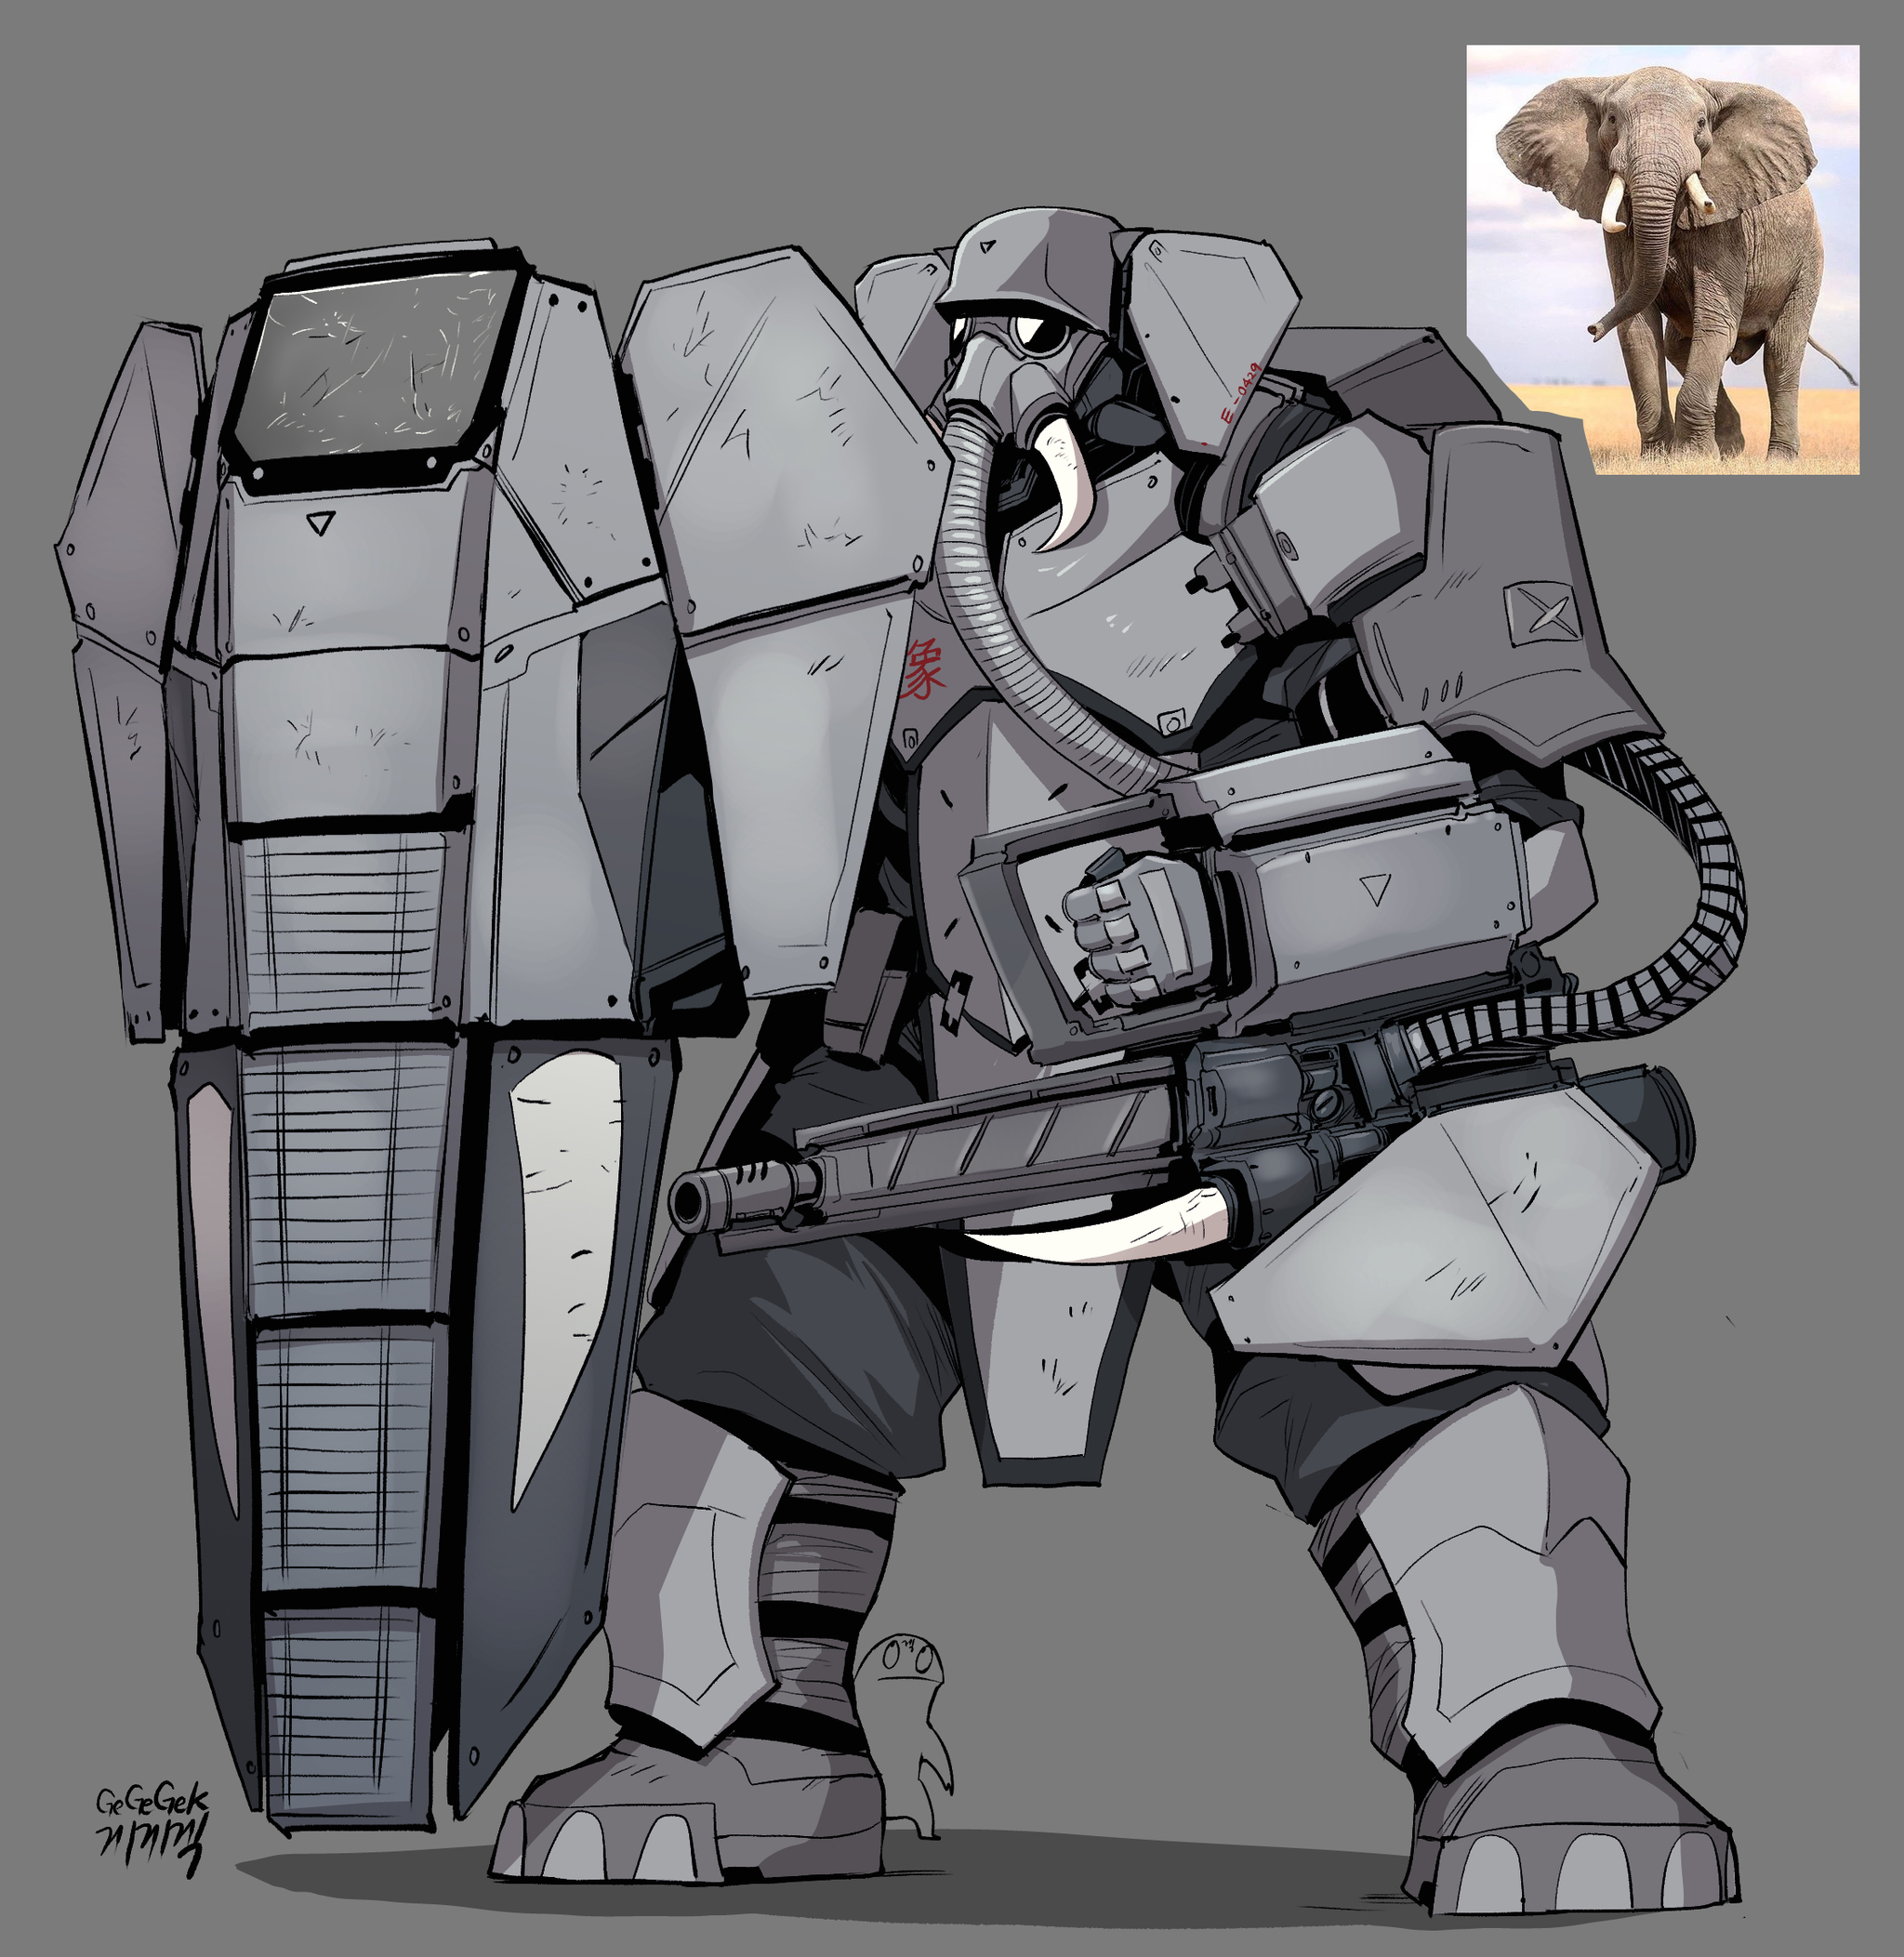 Combat tactical elephant - Gegegekman, Art, Humanization, Fantasy, Elephants